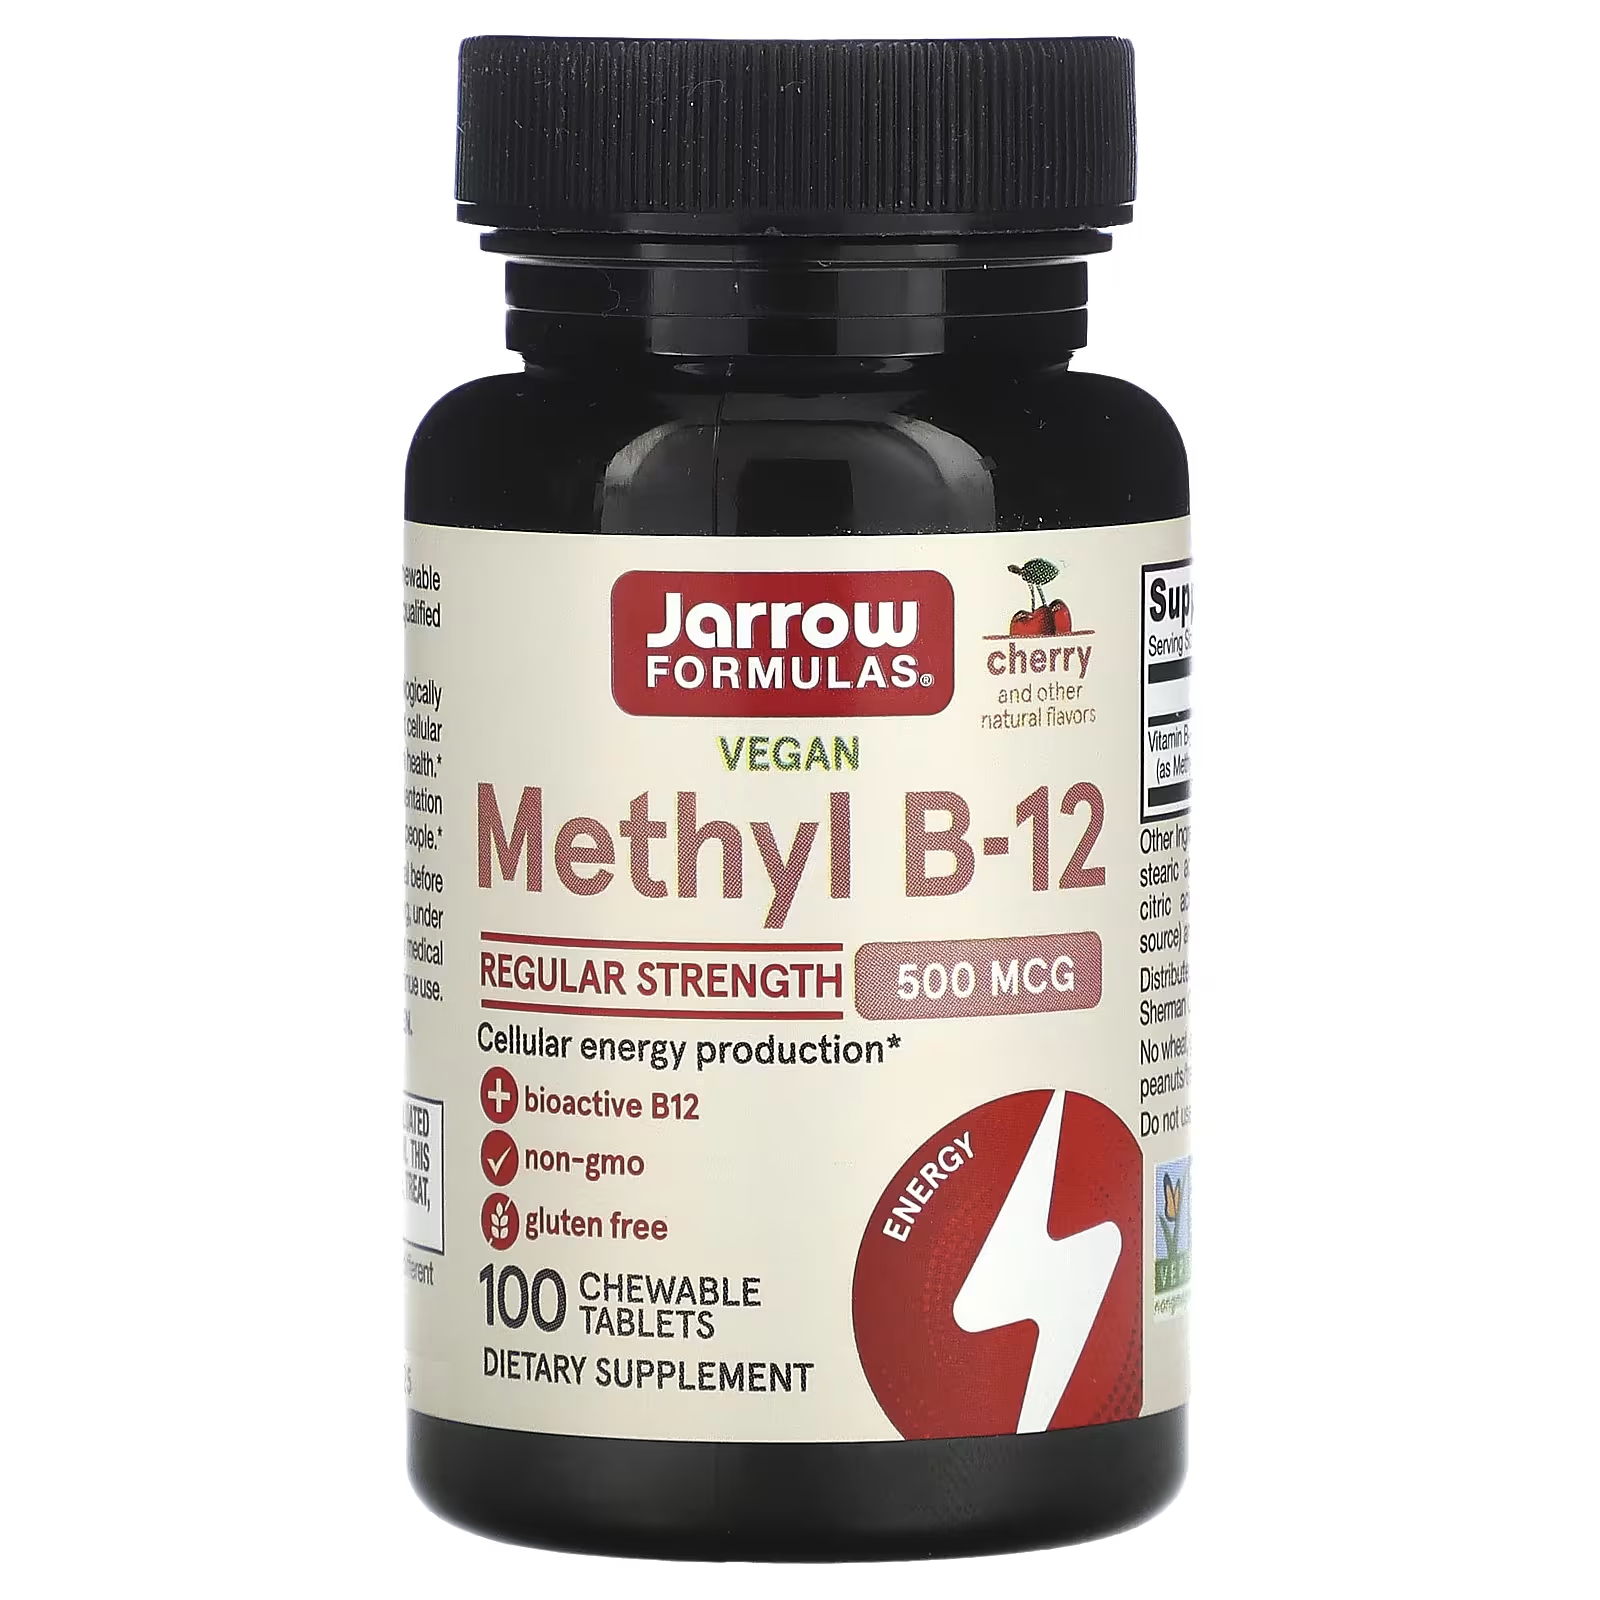 Метил B-12 Jarrow Formulas вишня, 100 жевательных таблеток пищевая добавка jarrow formulas vegan mmethyl b 12 вишня 90 жевательных таблеток